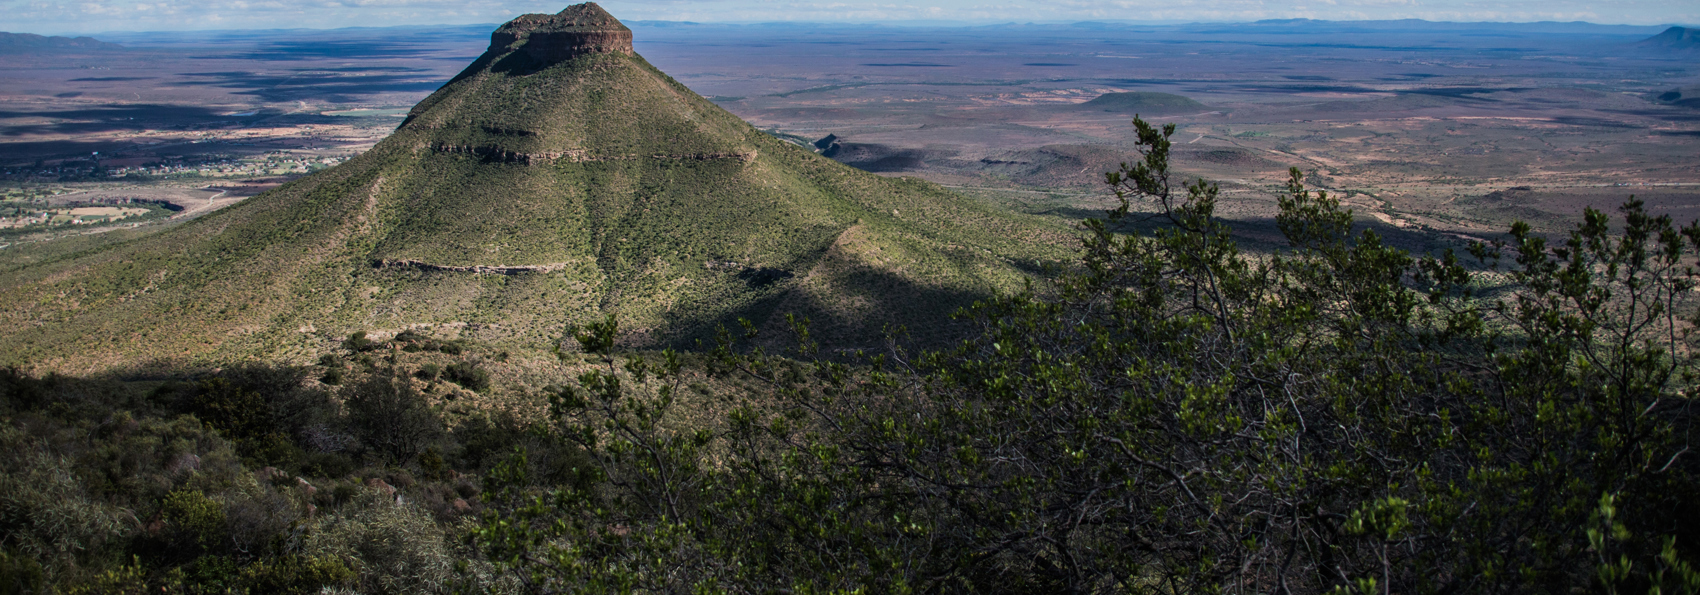 Mountain Valley Of Desolation Matjiesfontein